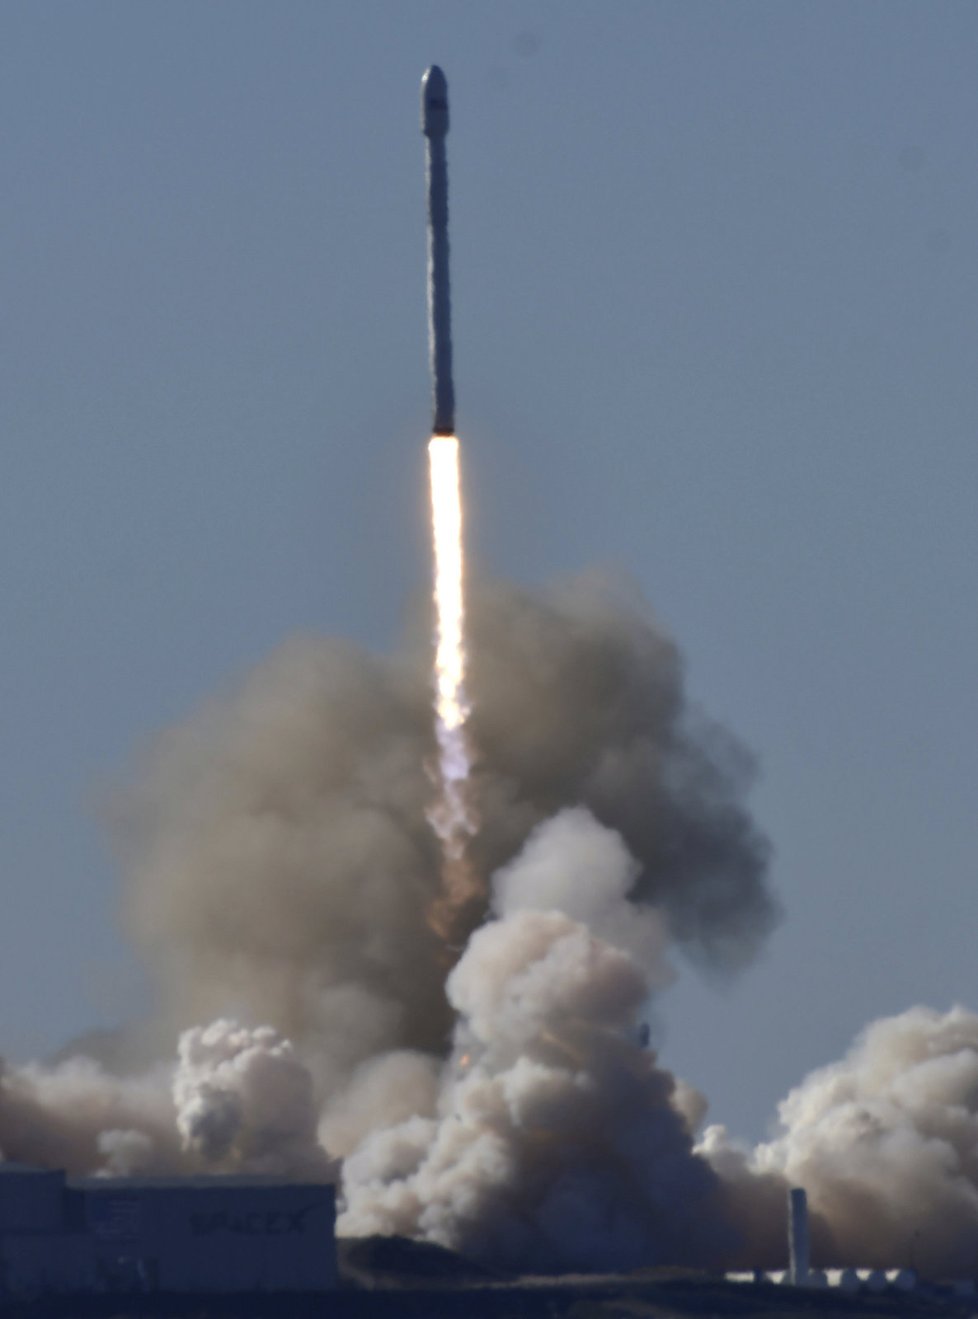 Z Kalifornie odstartovala raketa Falcon 9 společnosti SpaceX.